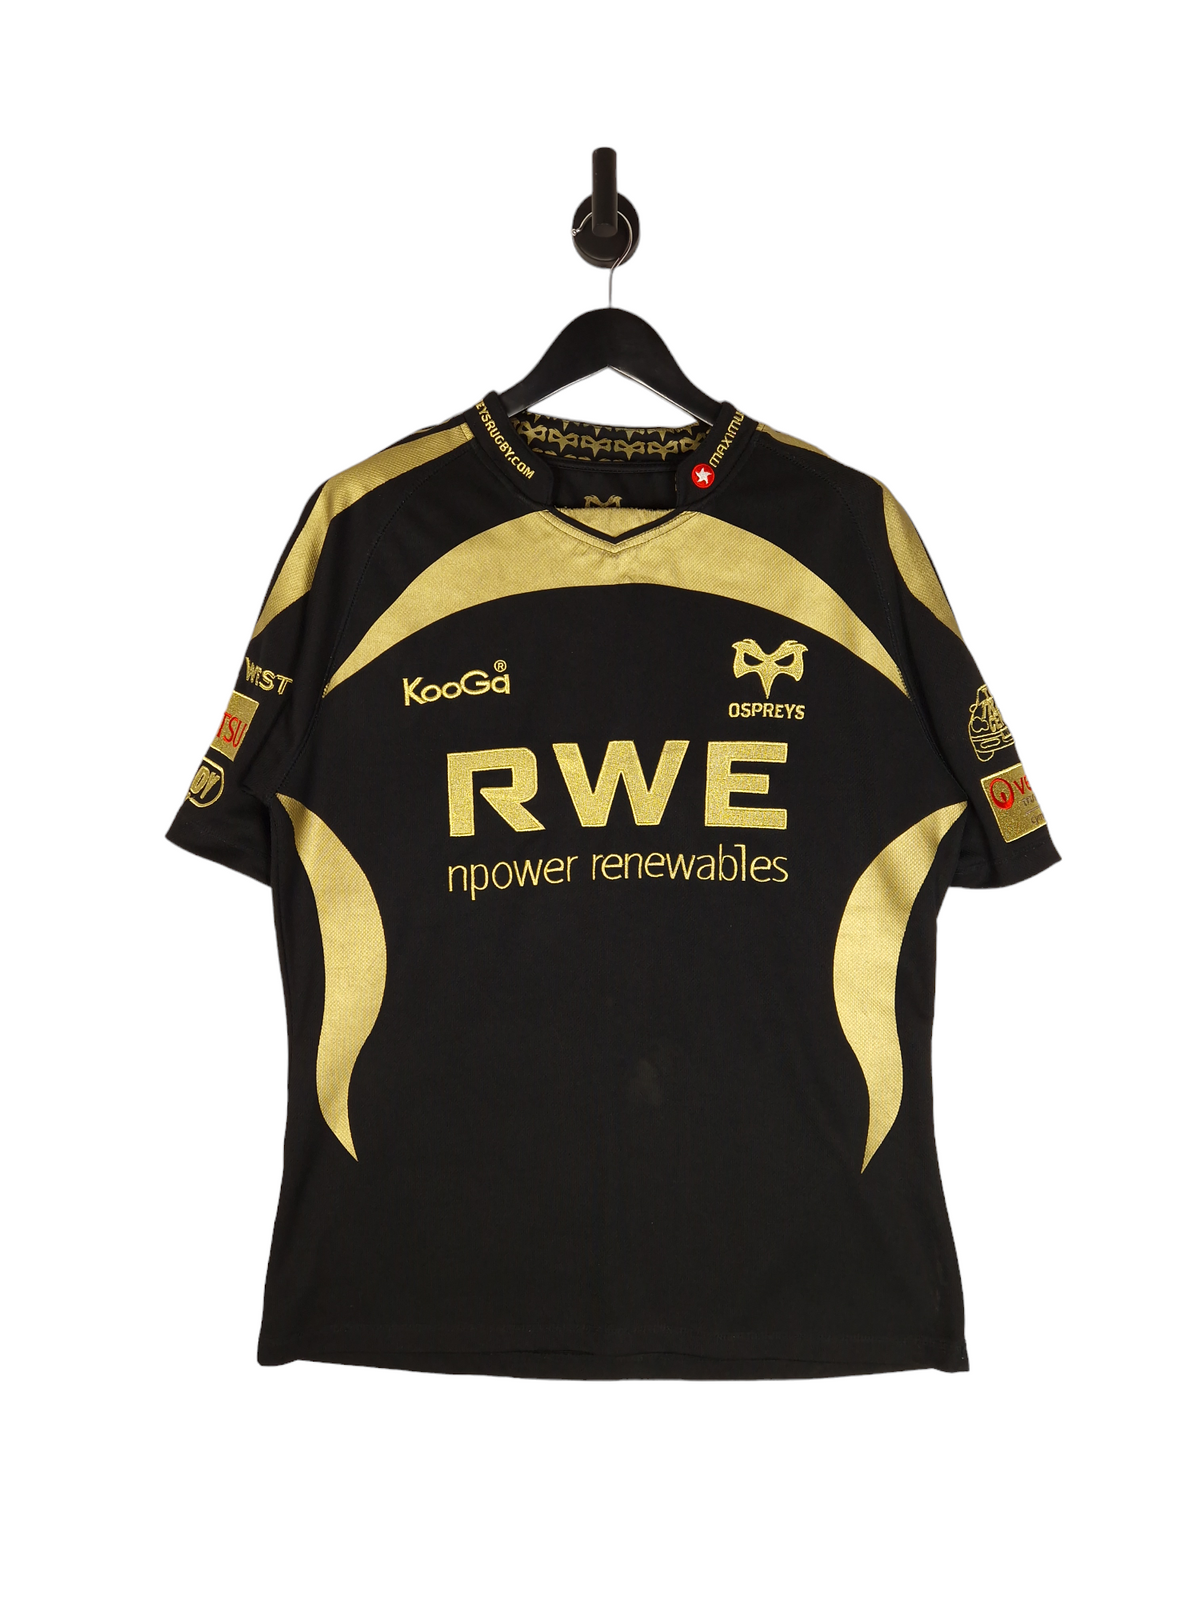 KooGa Ospreys Rugby Union Shirt -  Size Large